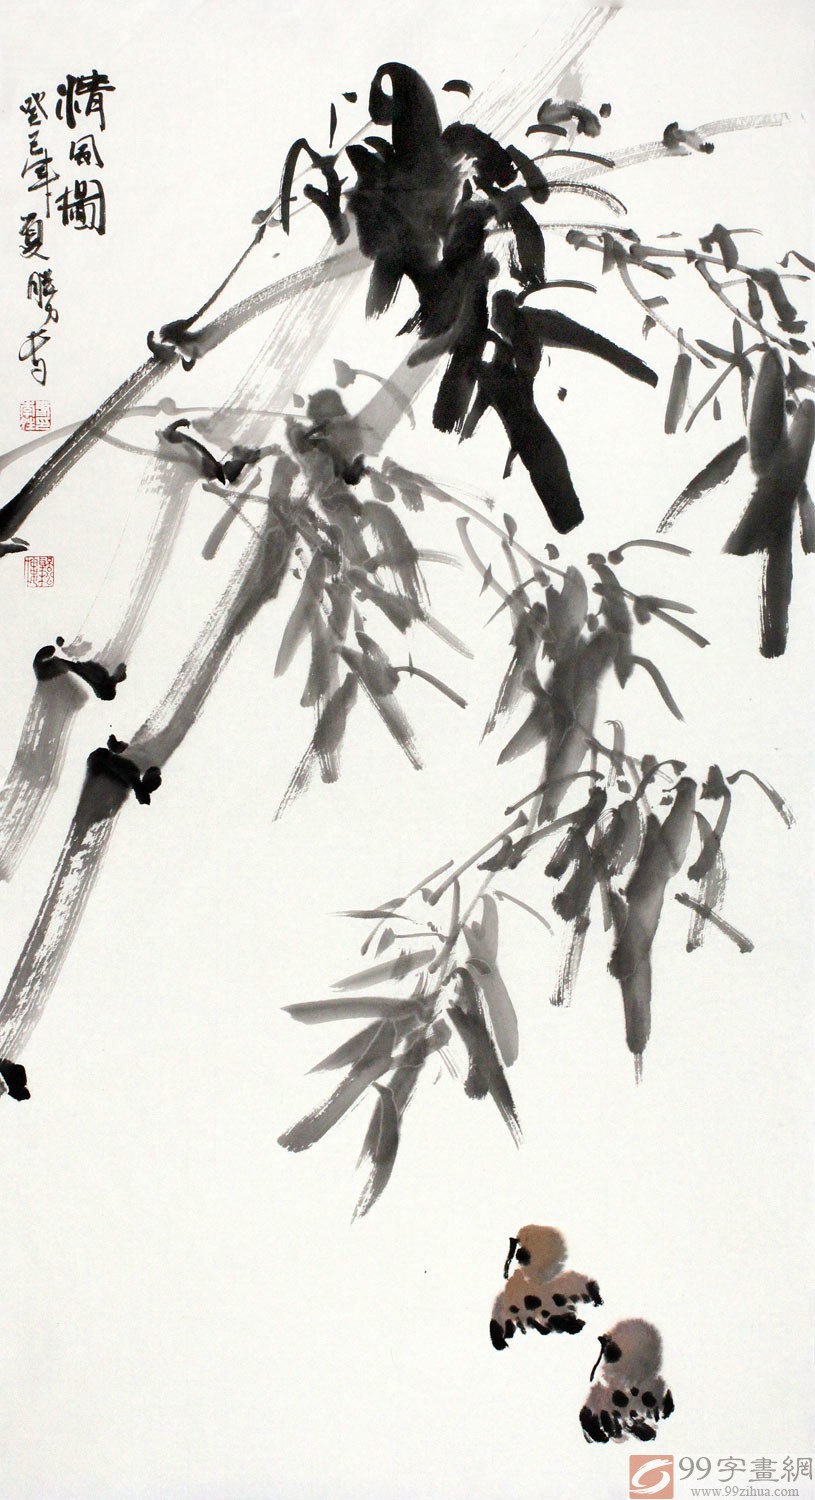 水墨国画竹子《清风图》 - 竹子画- 99字画网